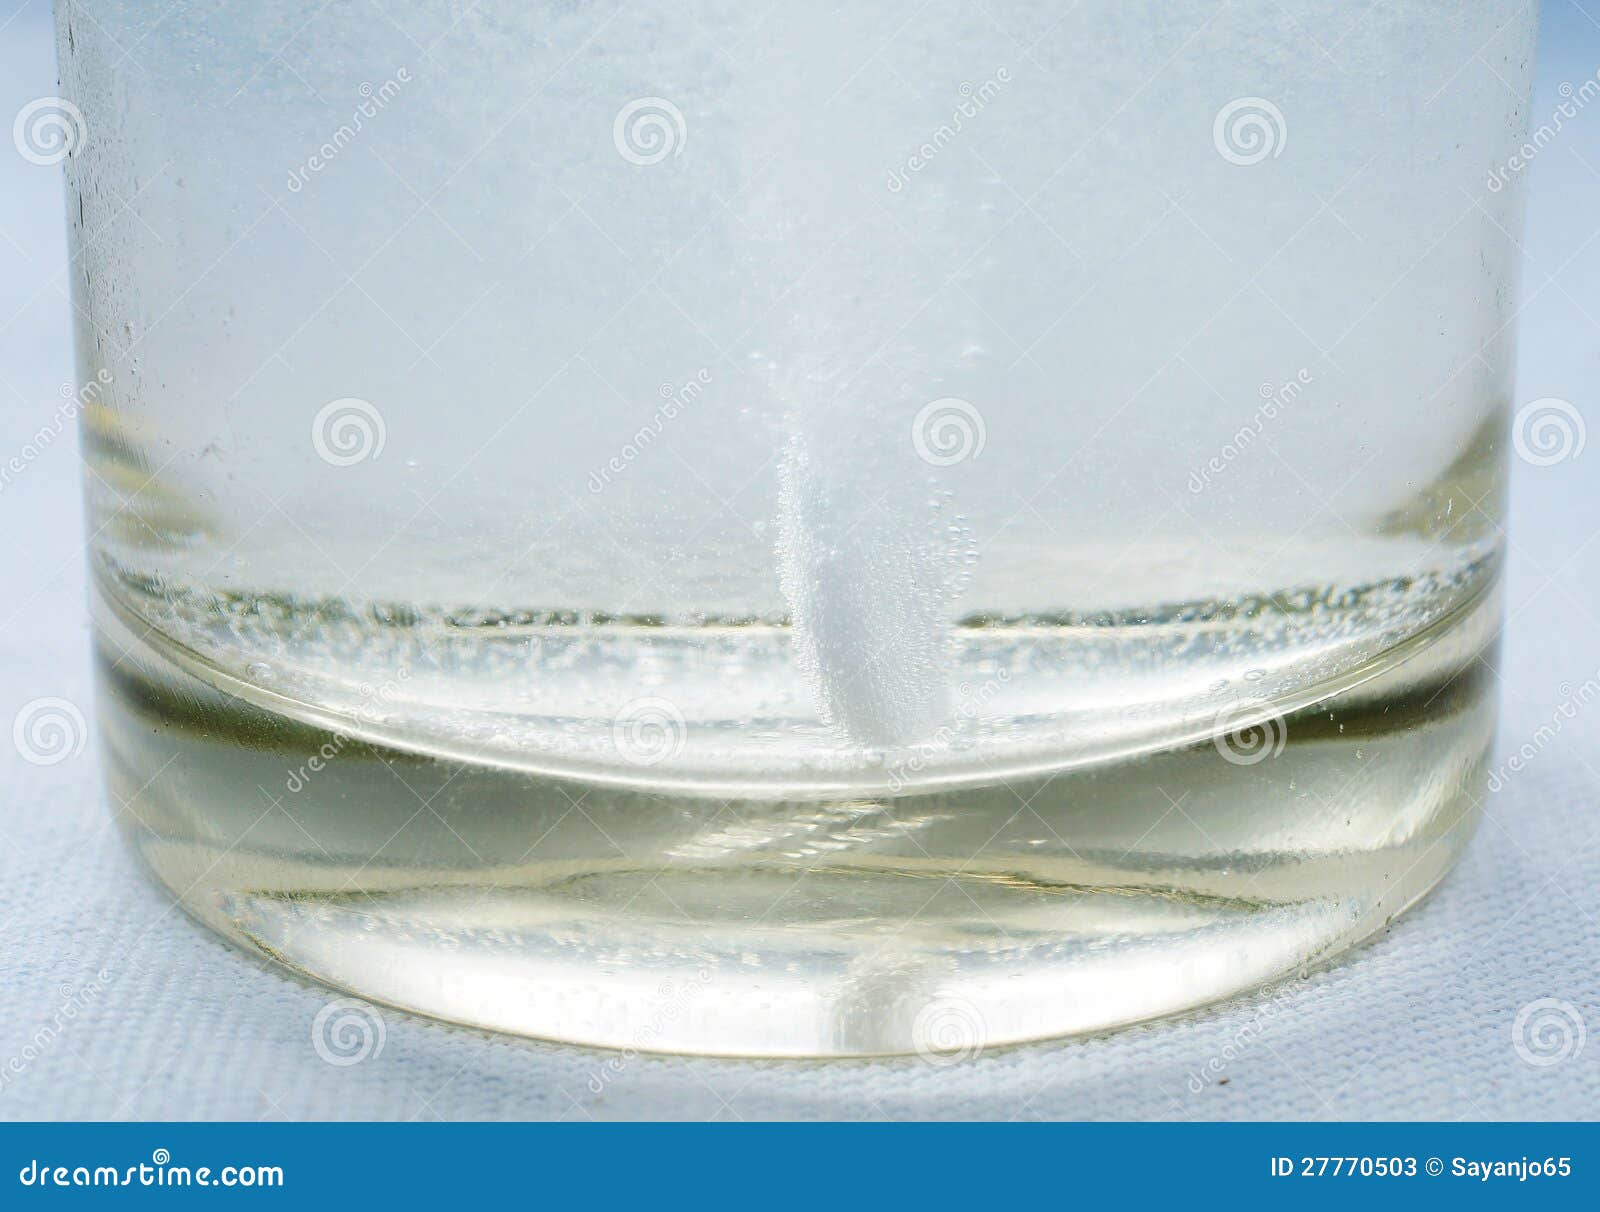 Туалетная вода растворяется в воде. Растворение. Растворение стекла в воде. Стекло растворяется в воде. Плавиковая кислота стаканы.